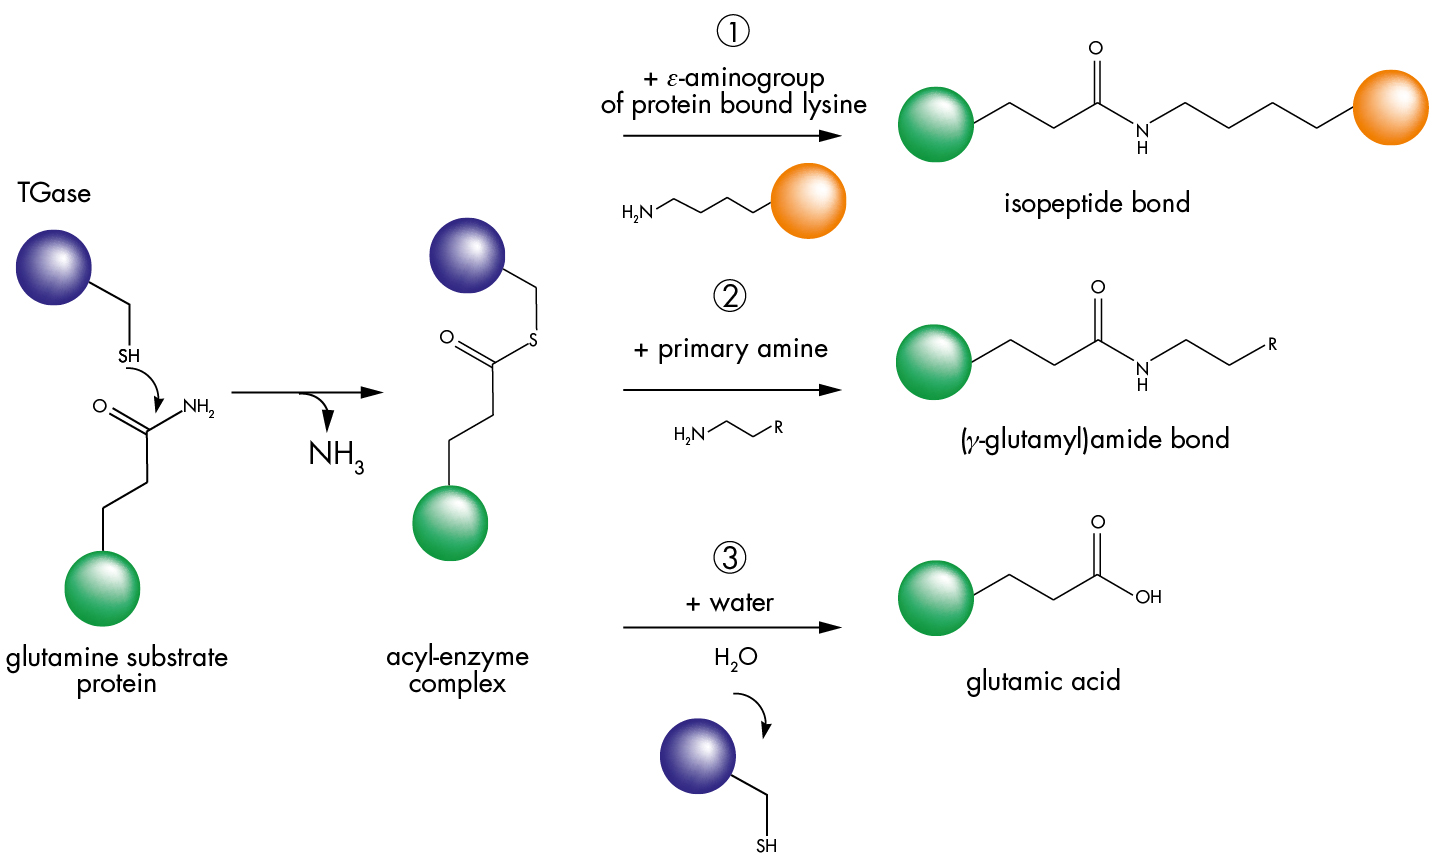 Transglutaminase reaction pathway